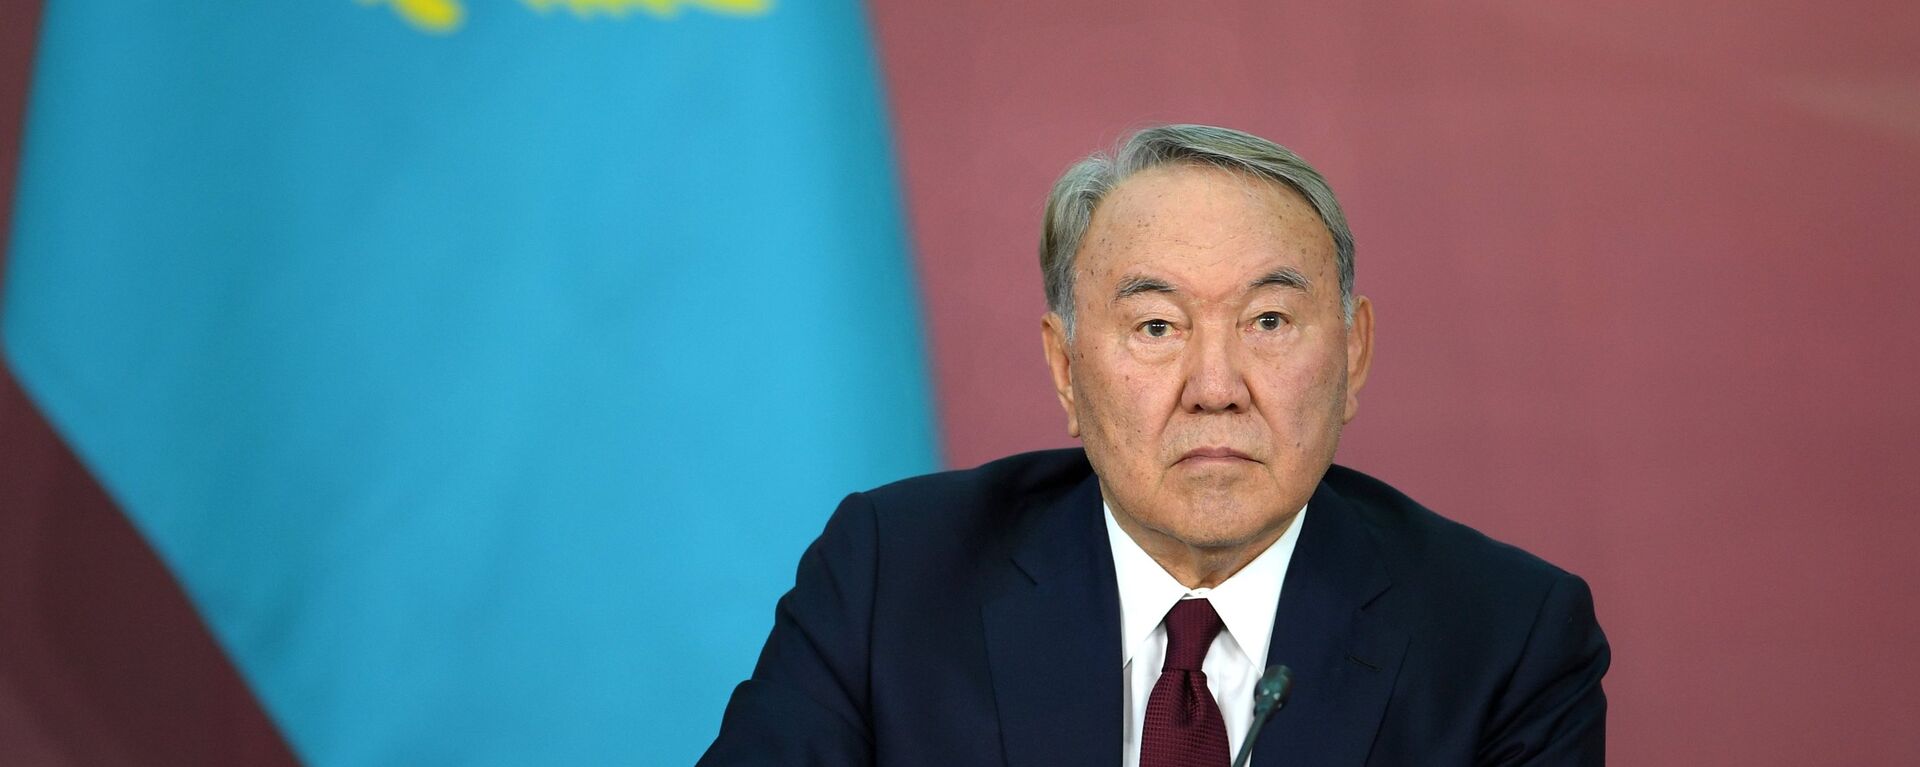 Nursultán Nazarbáev, expresidente de Kazajistán - Sputnik Mundo, 1920, 05.06.2022